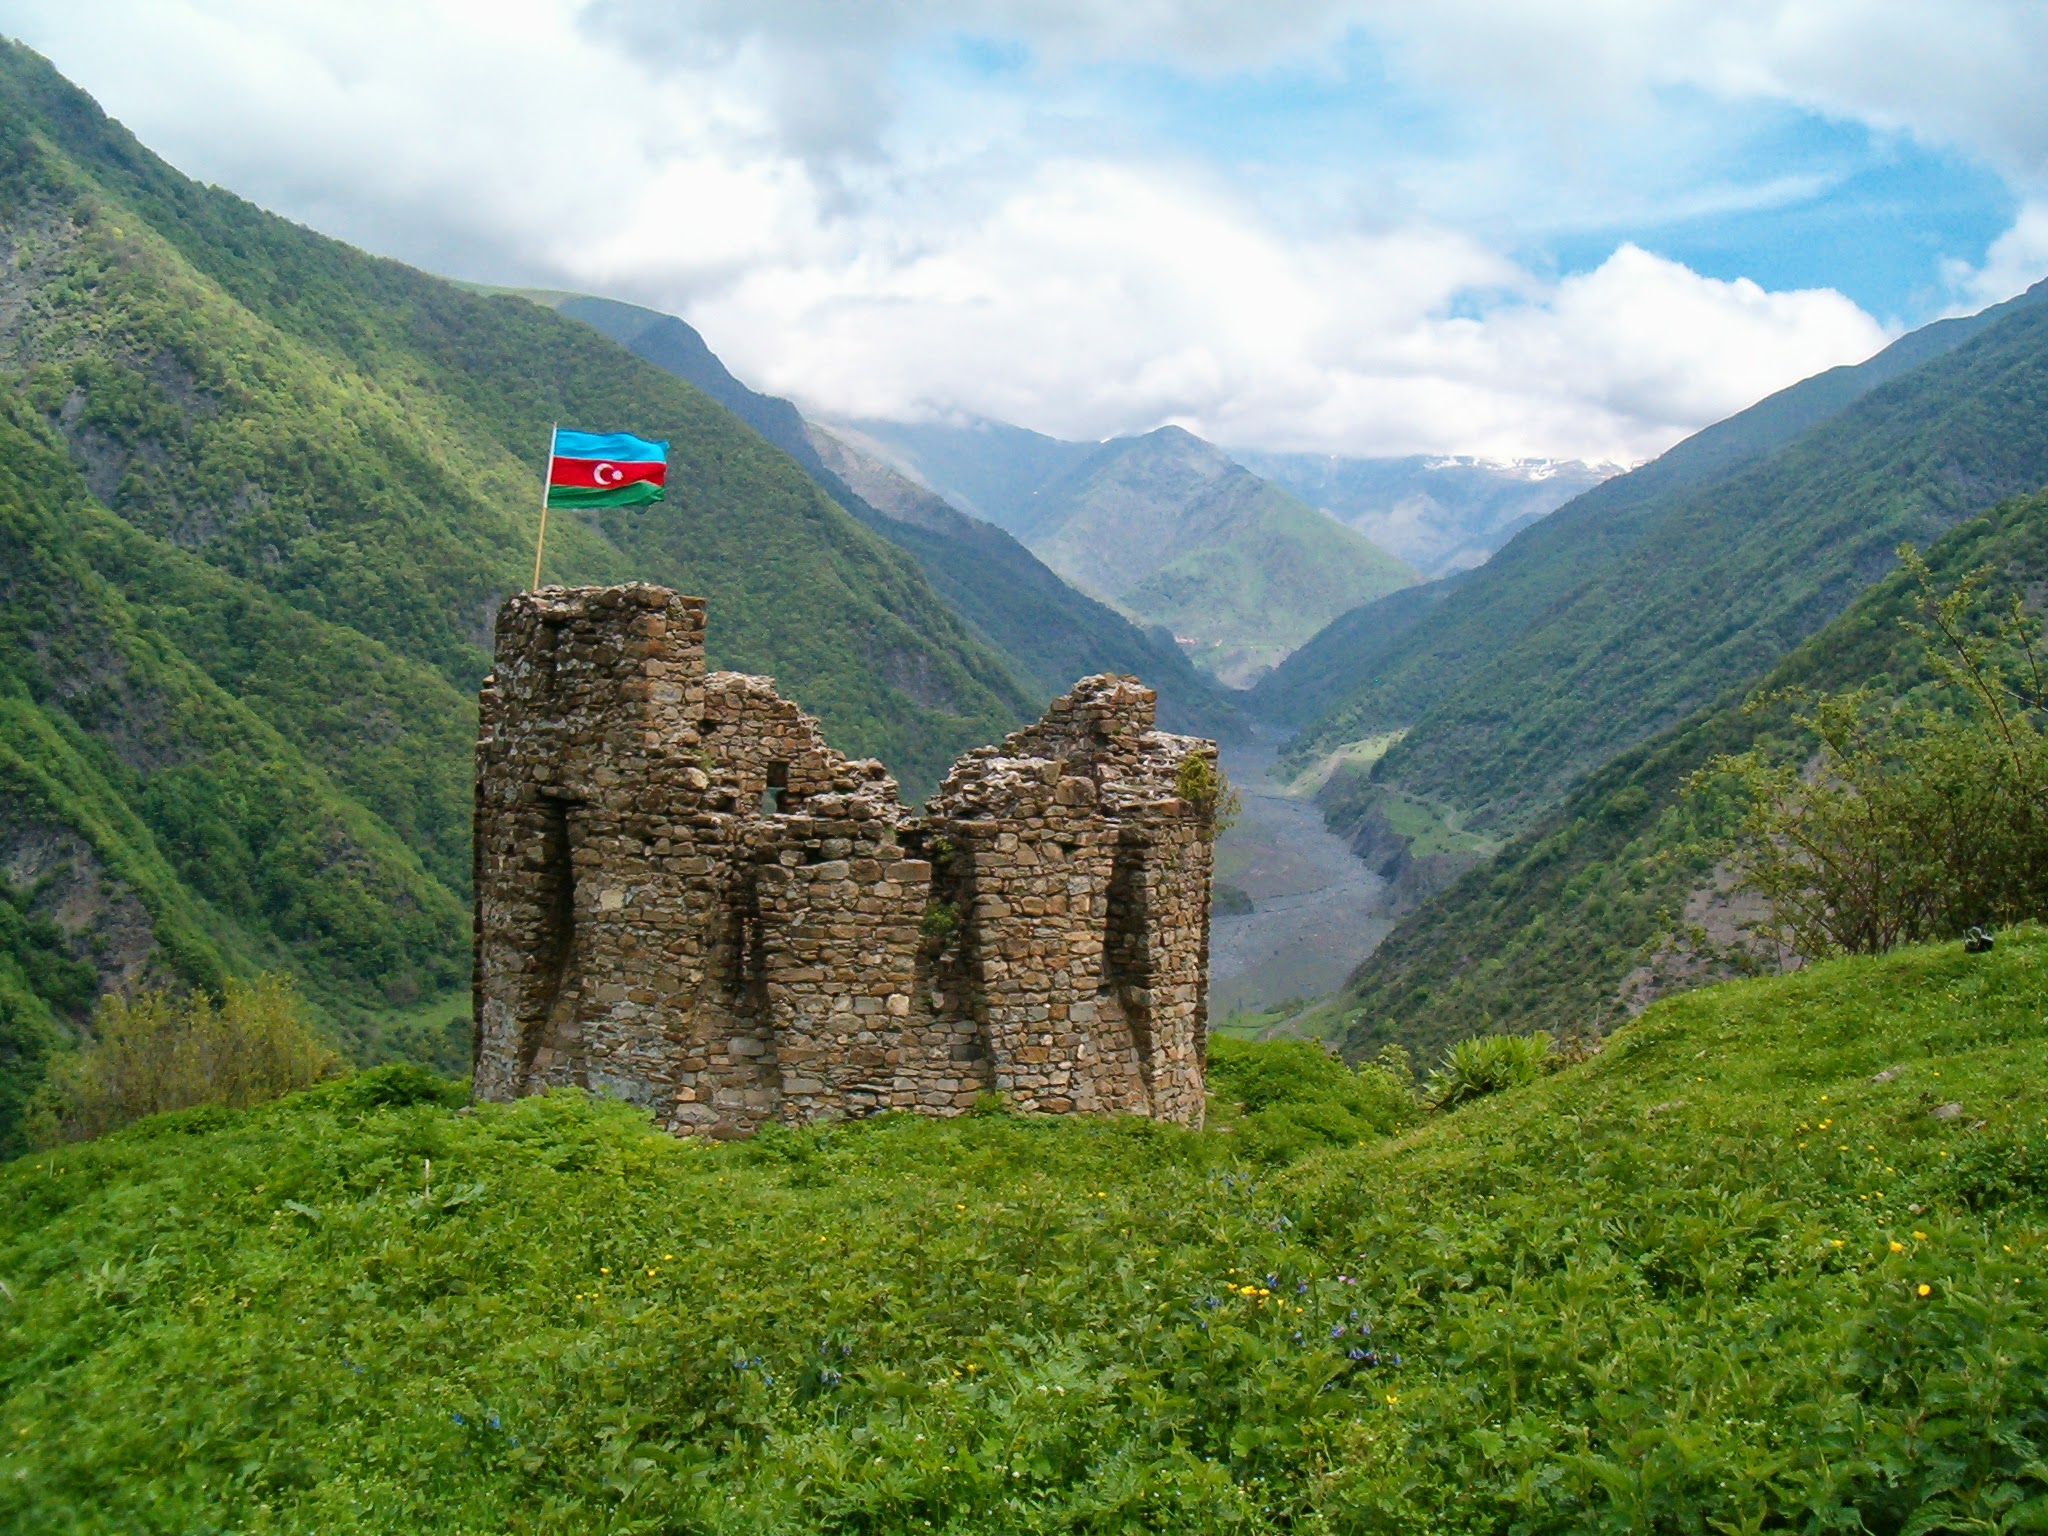 Travel to Azerbaijan